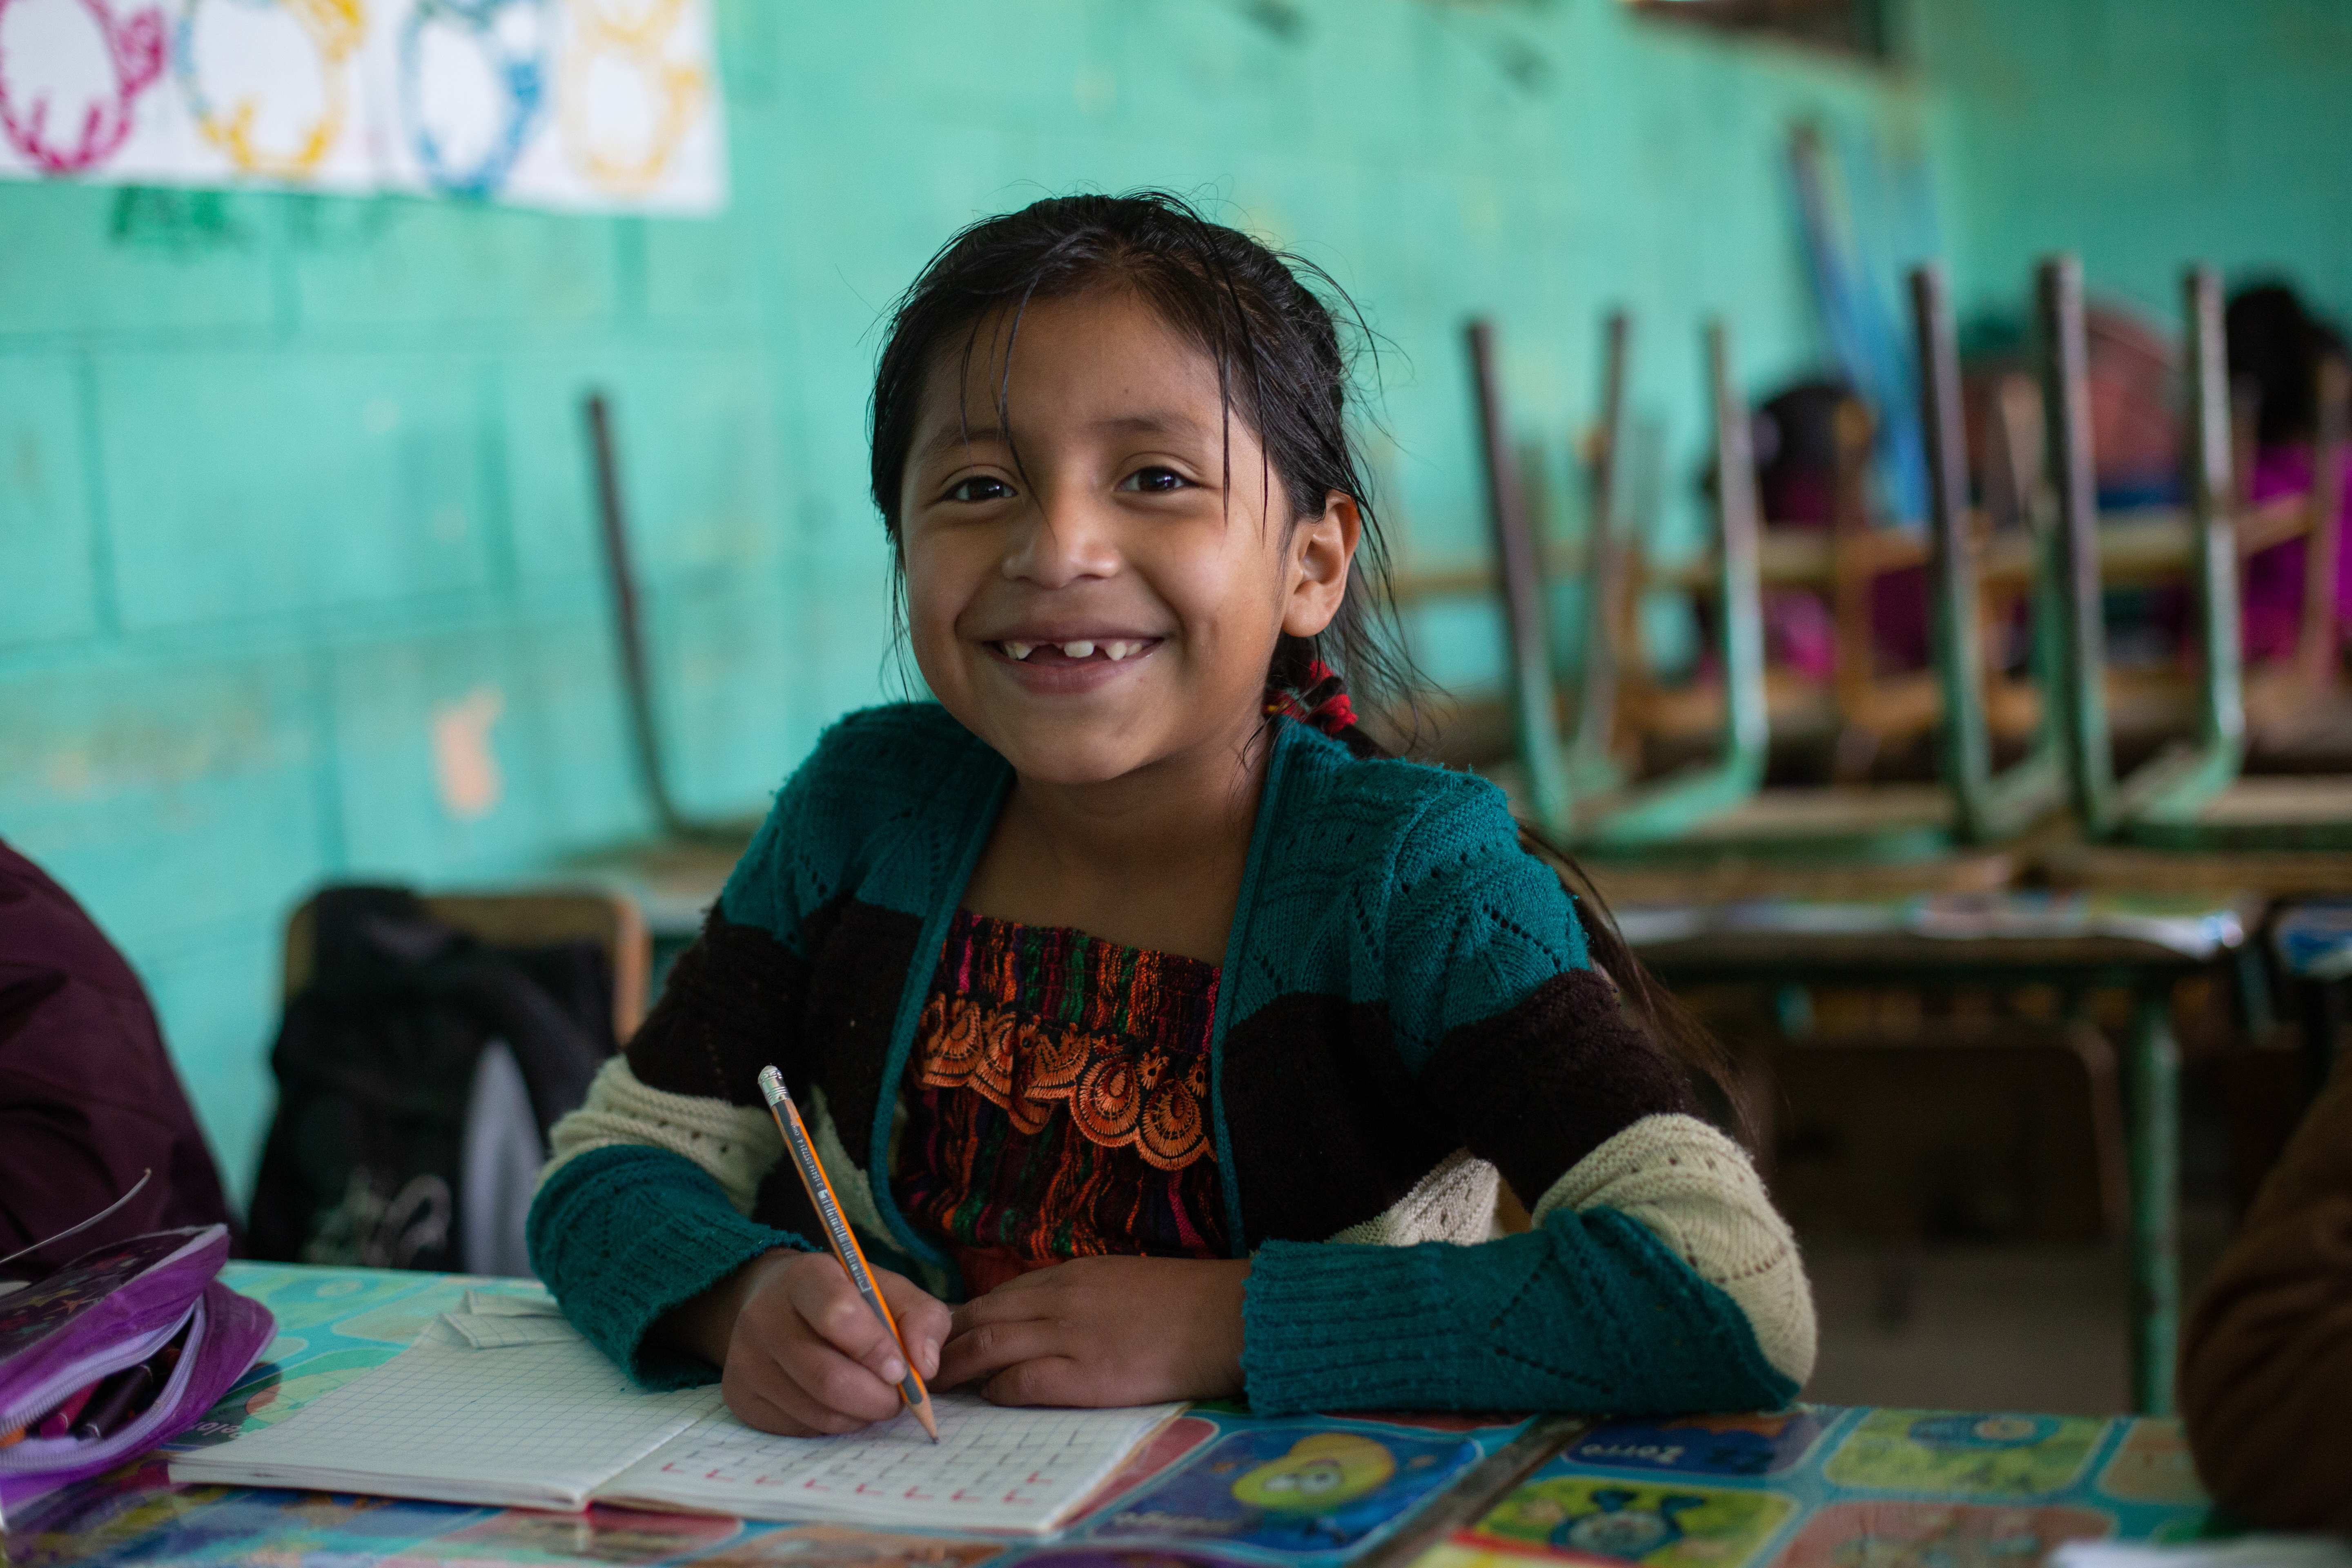 Eine Schulklasse in Guatemala. Mädchen aus der ersten Reihe lächelt in die Kamera. (Quelle: Jakob Studnar)